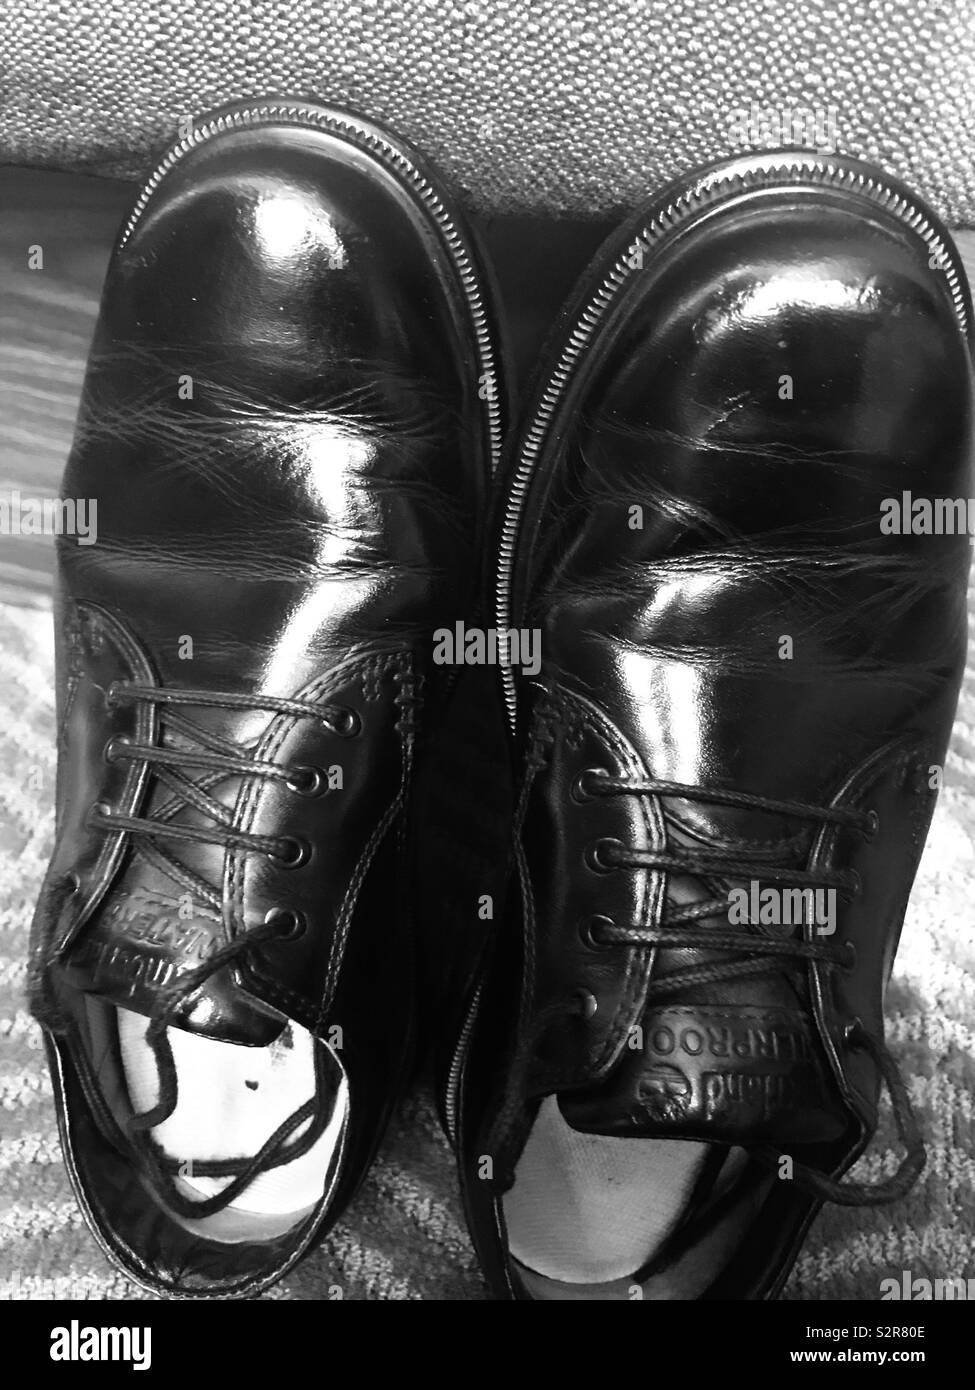 Chaussures brillantes Banque d'images noir et blanc - Alamy